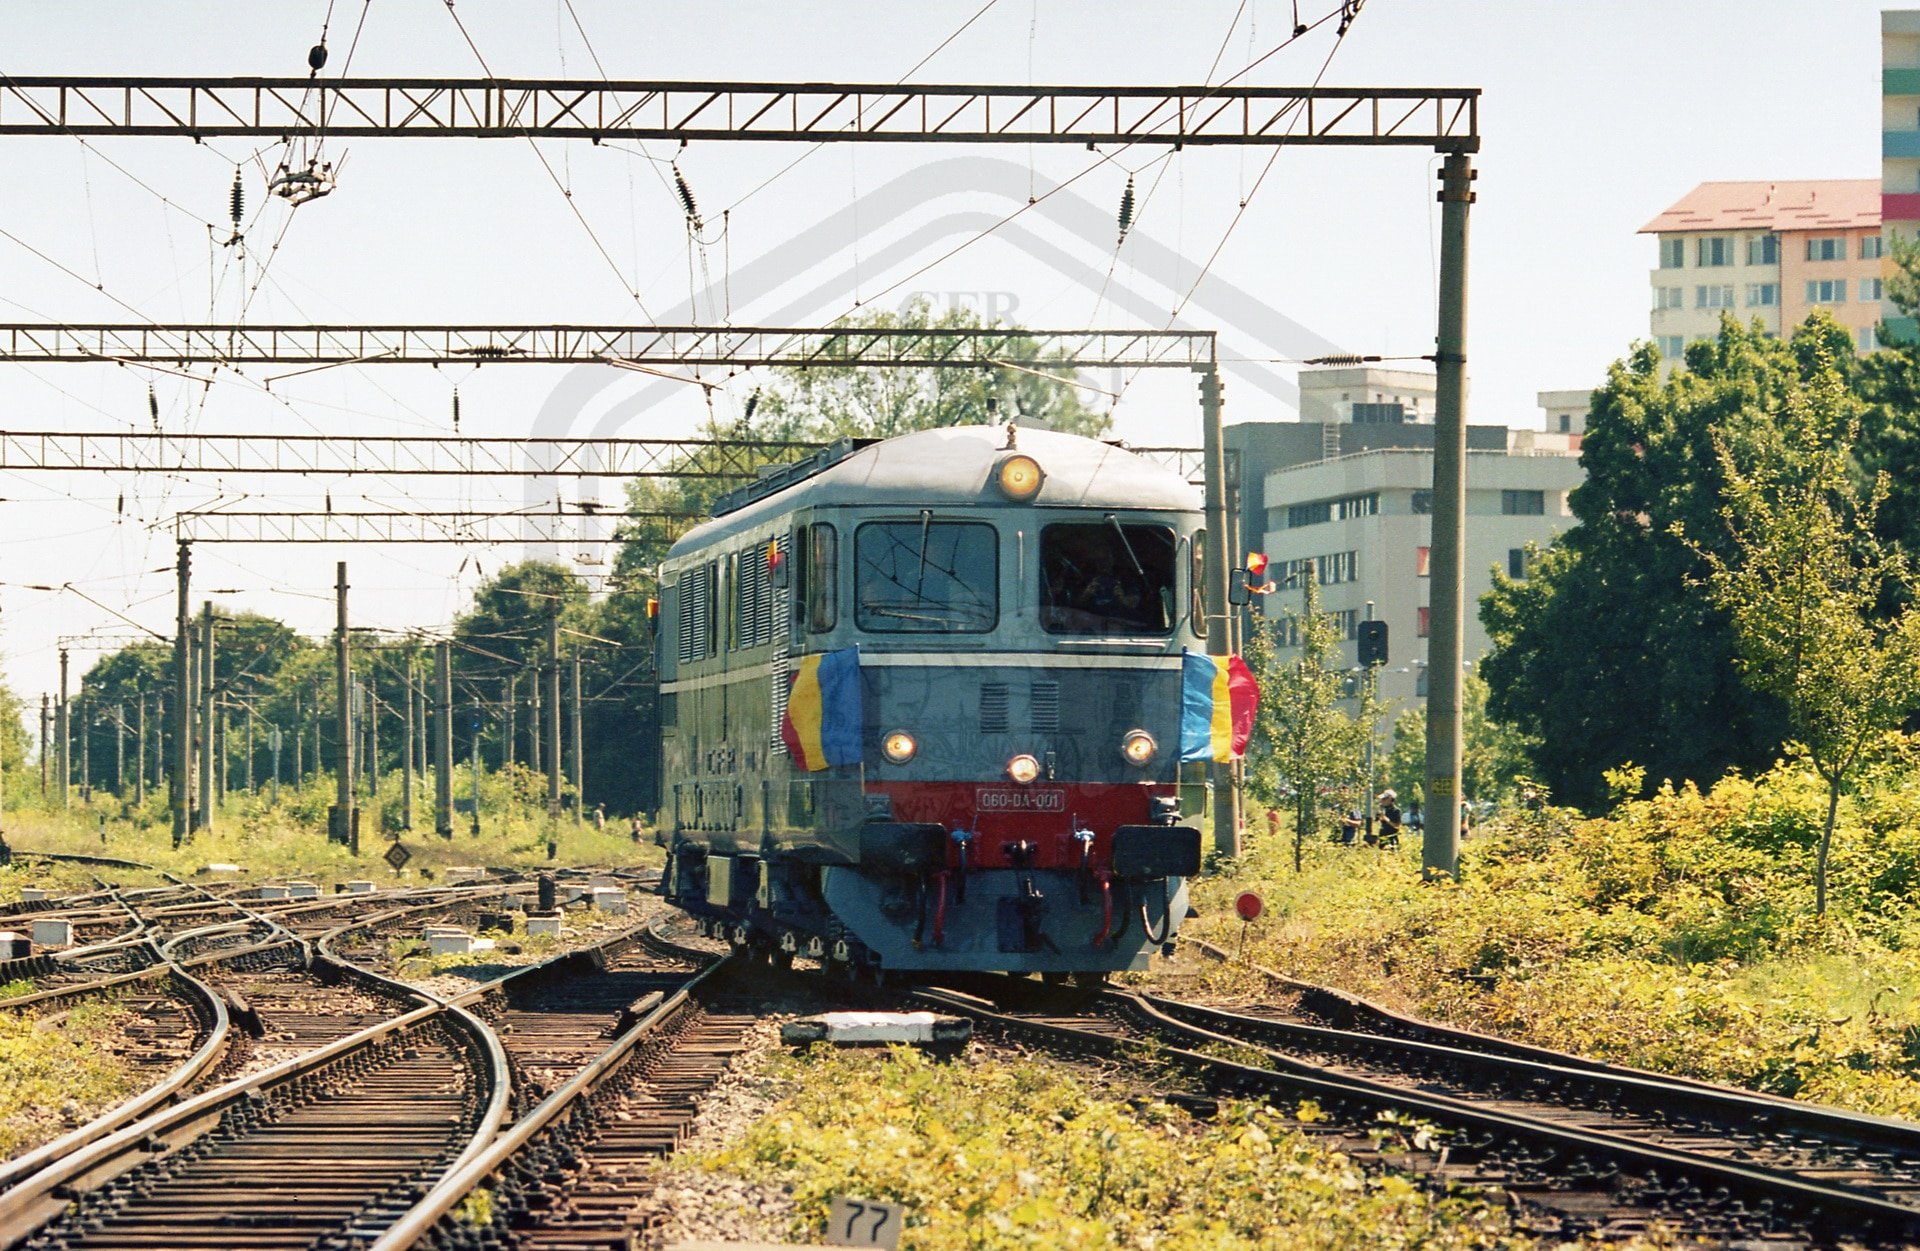  În sfârşit, fără locomotive diesel spre Vaslui? Planuri pentru electrificarea liniei de tren Iaşi-Tecuci